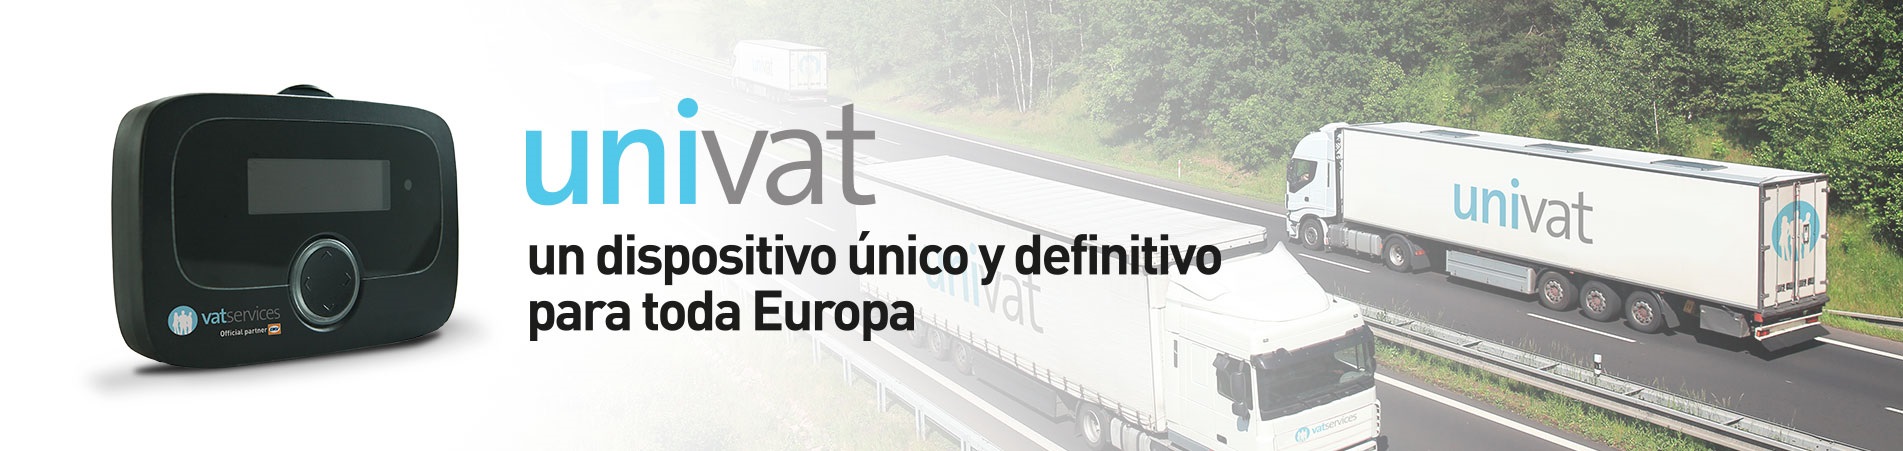 UNIVAT-de-vatservices-unico-dispositivo-de-peajes-en-europa